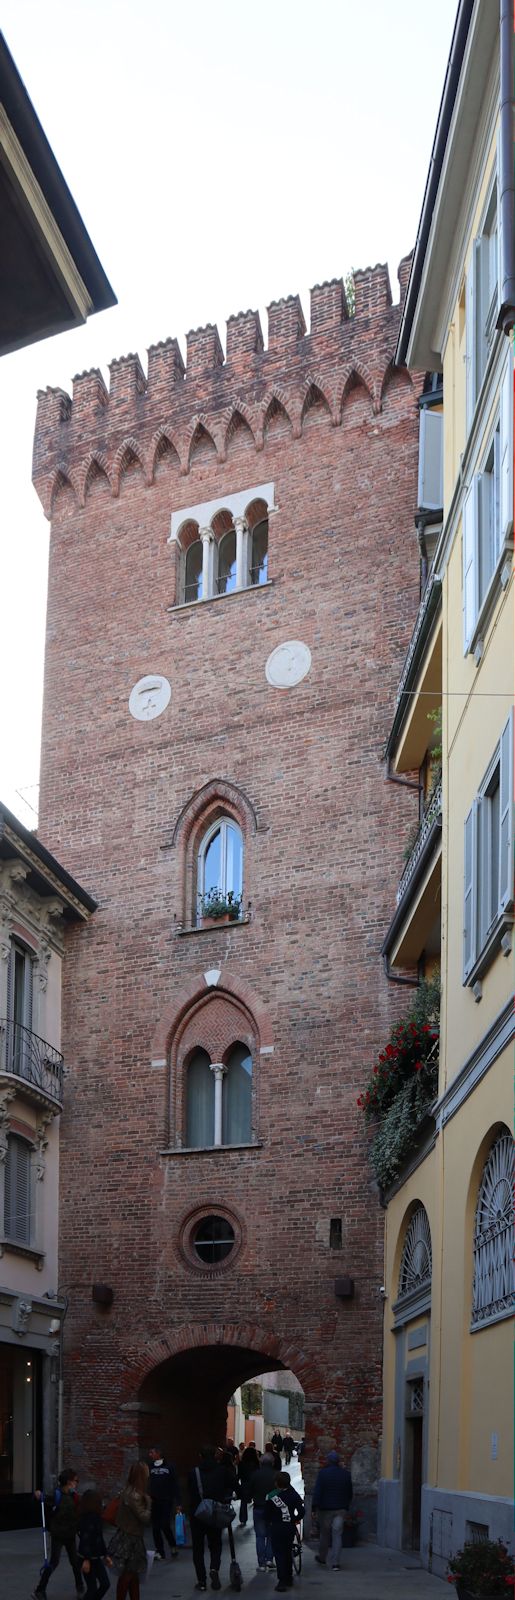 Torre di Teodolinda in Monza, tatsächlich erst im 13. Jahrhundert als Stadttor und Zollstelle erbaut